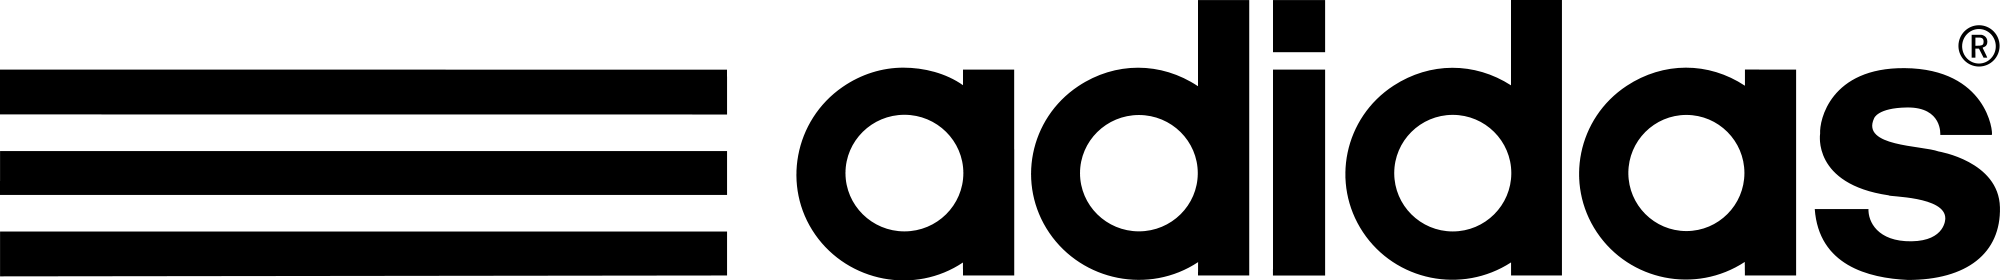 Adidas Logo PNG Image Background